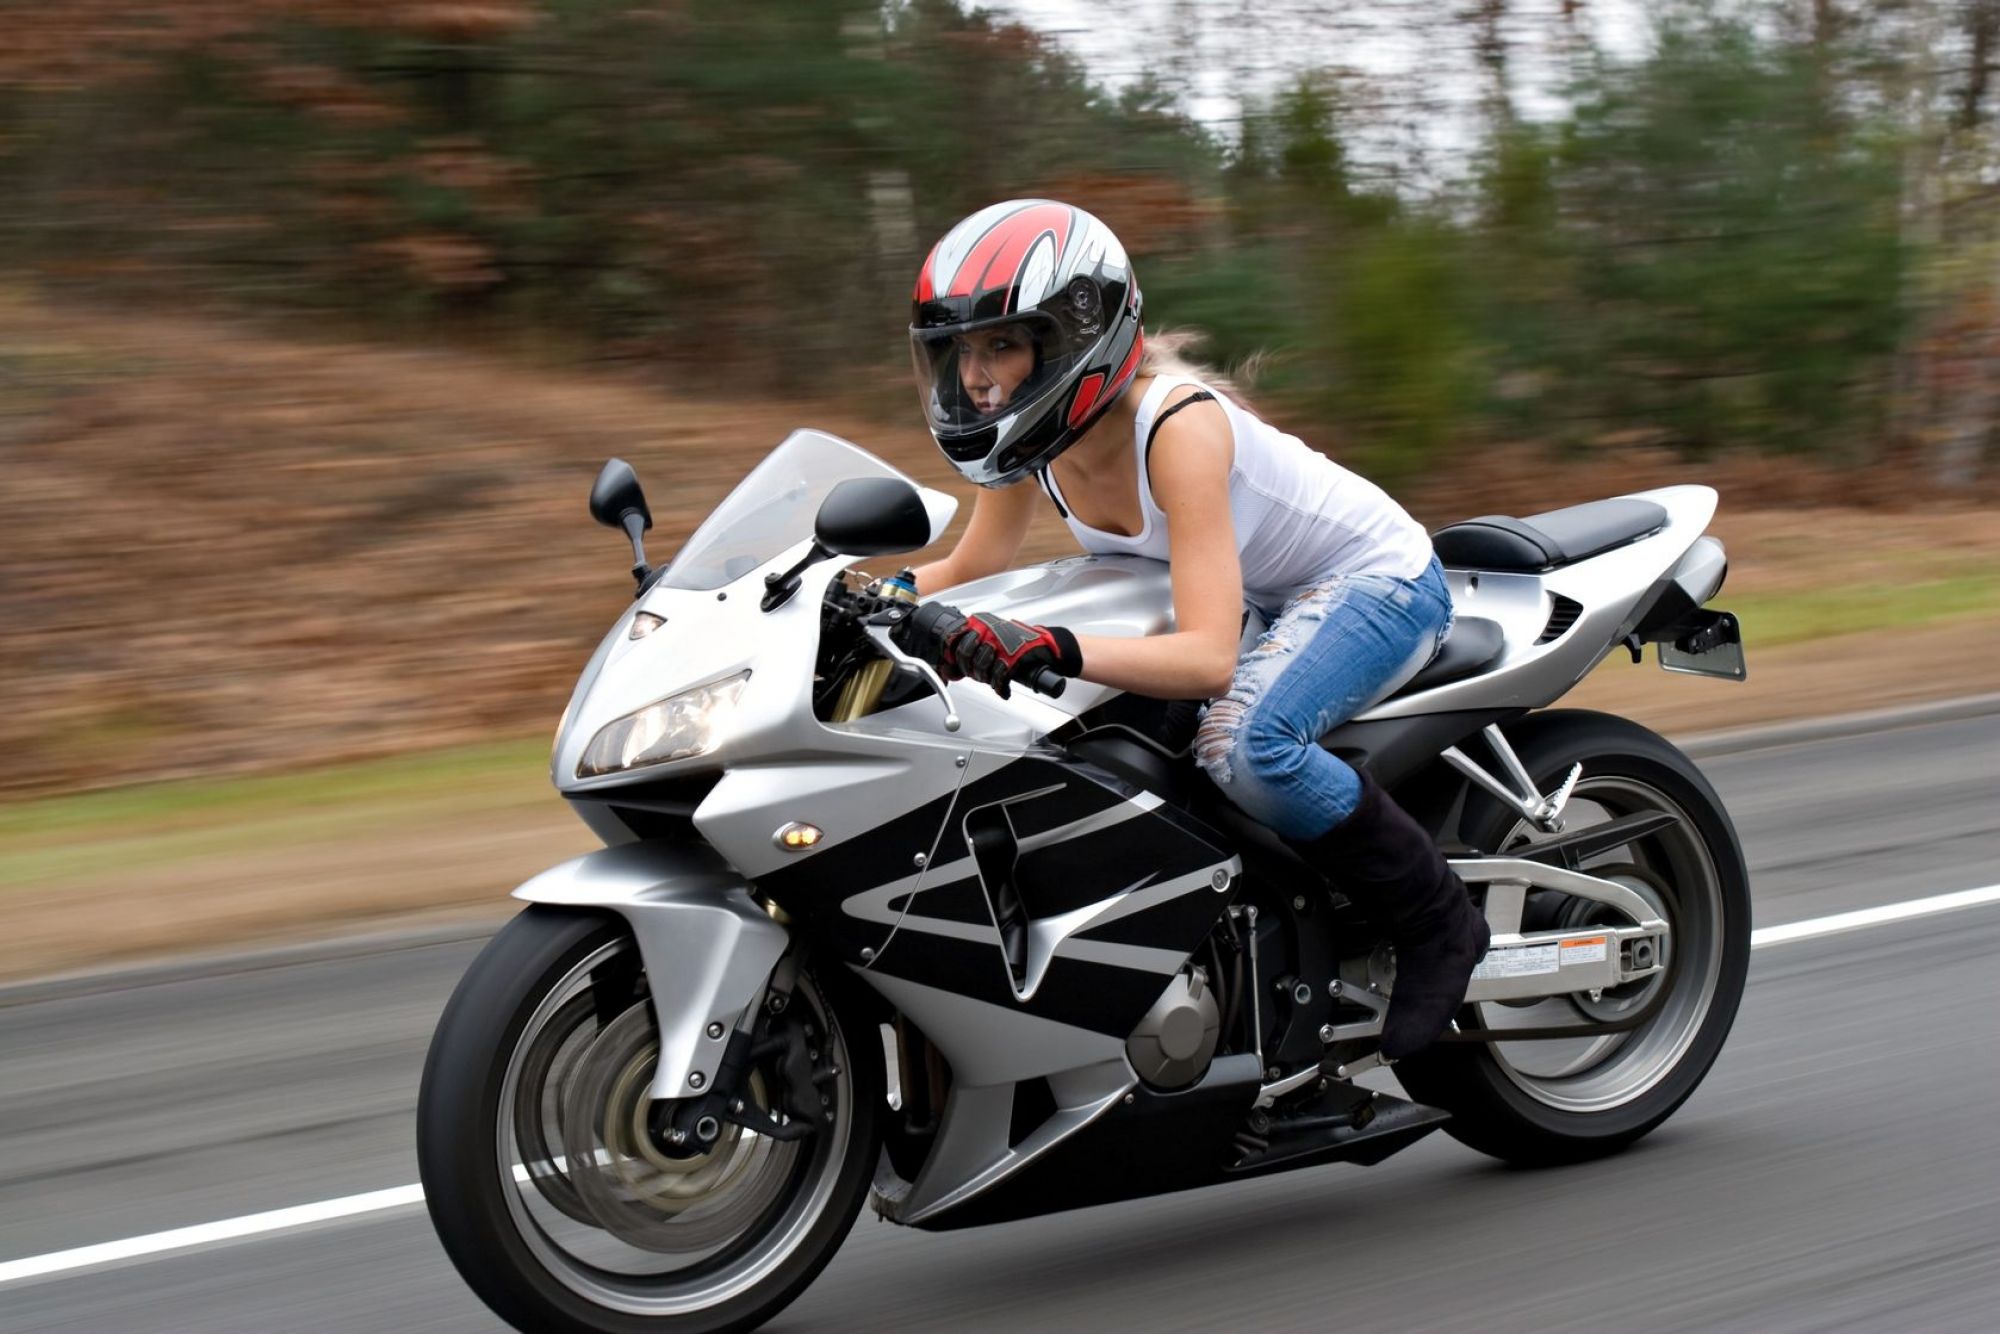 Baltimore Motorcycle Insurance